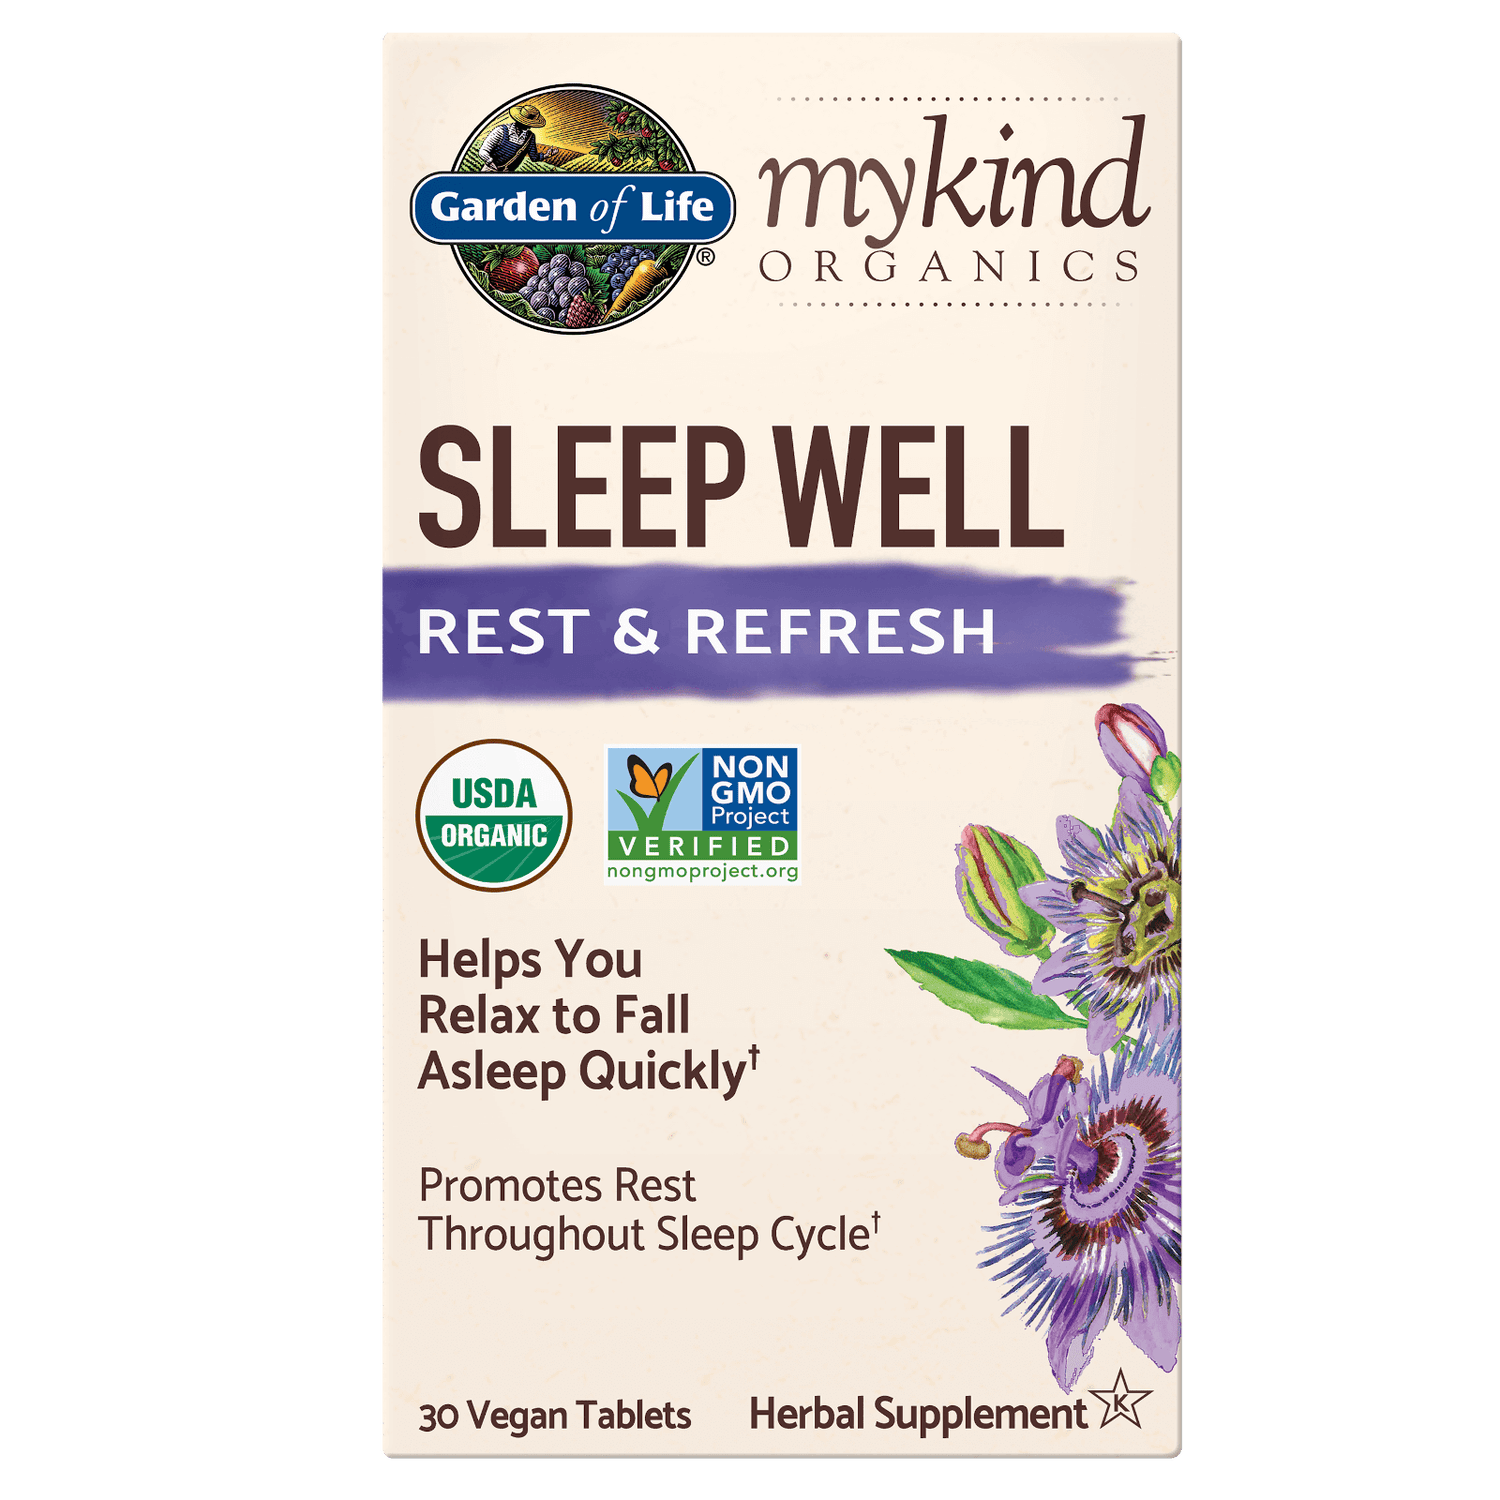 Comprimés à base de plantes favorisant le sommeil mykind Organics - 30 comprimés